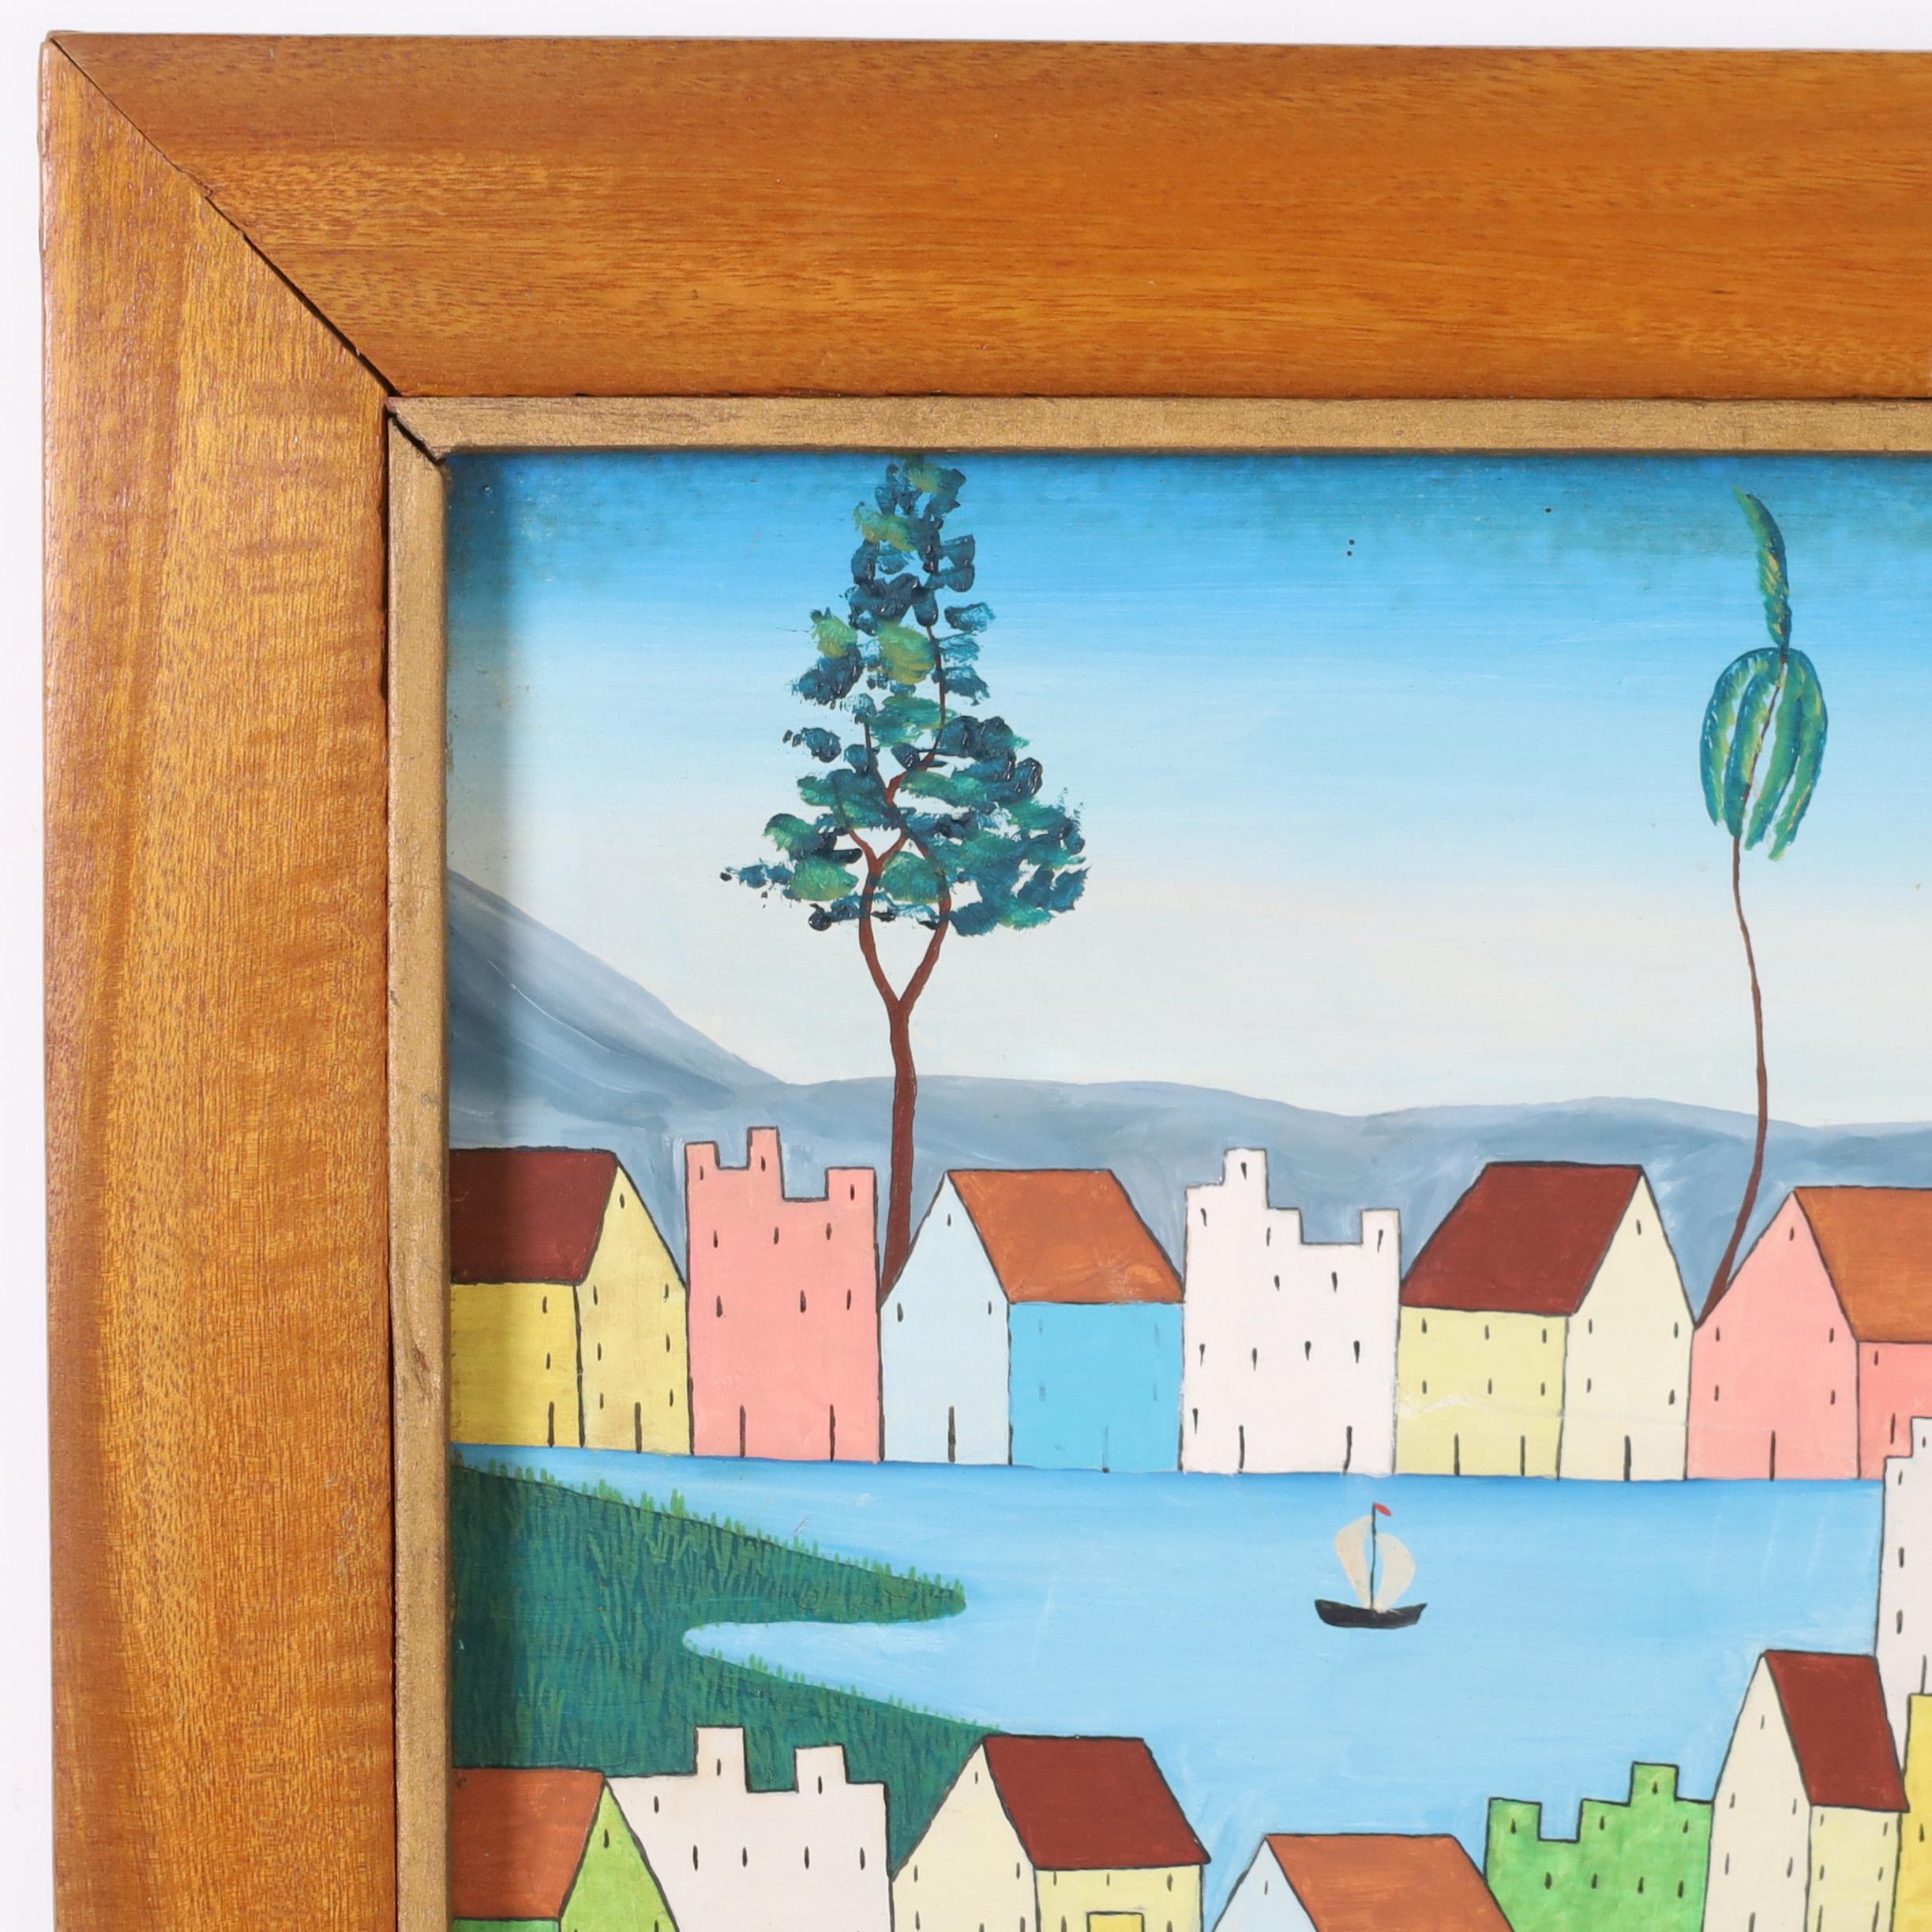 Peinture acrylique haïtienne vintage sur panneau exécutée dans un style moderne minimaliste inhabituel avec des maisons, des arbres et des personnes. Signée E. Abelard et présentée dans un cadre en acajou.